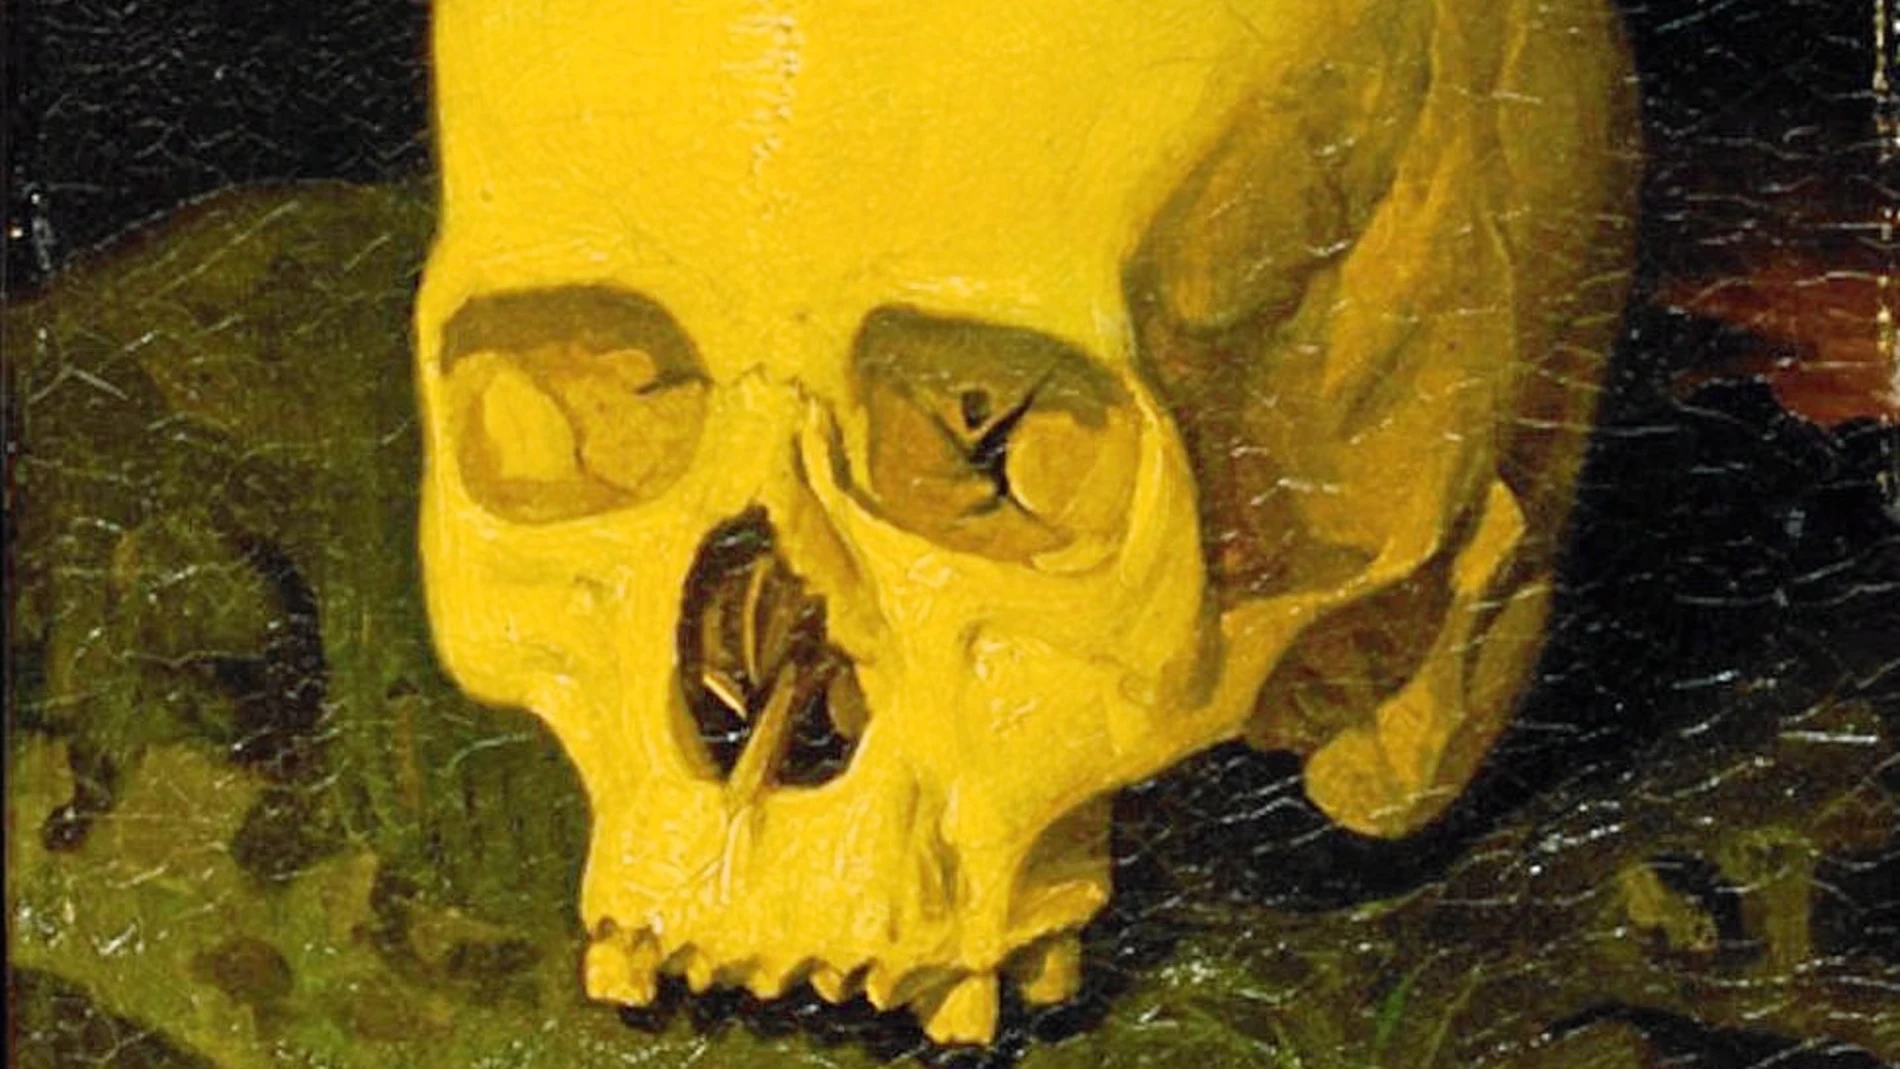 Cuadro de Dionisio Fierros en el que se representa el supuesto cráneo de Goya